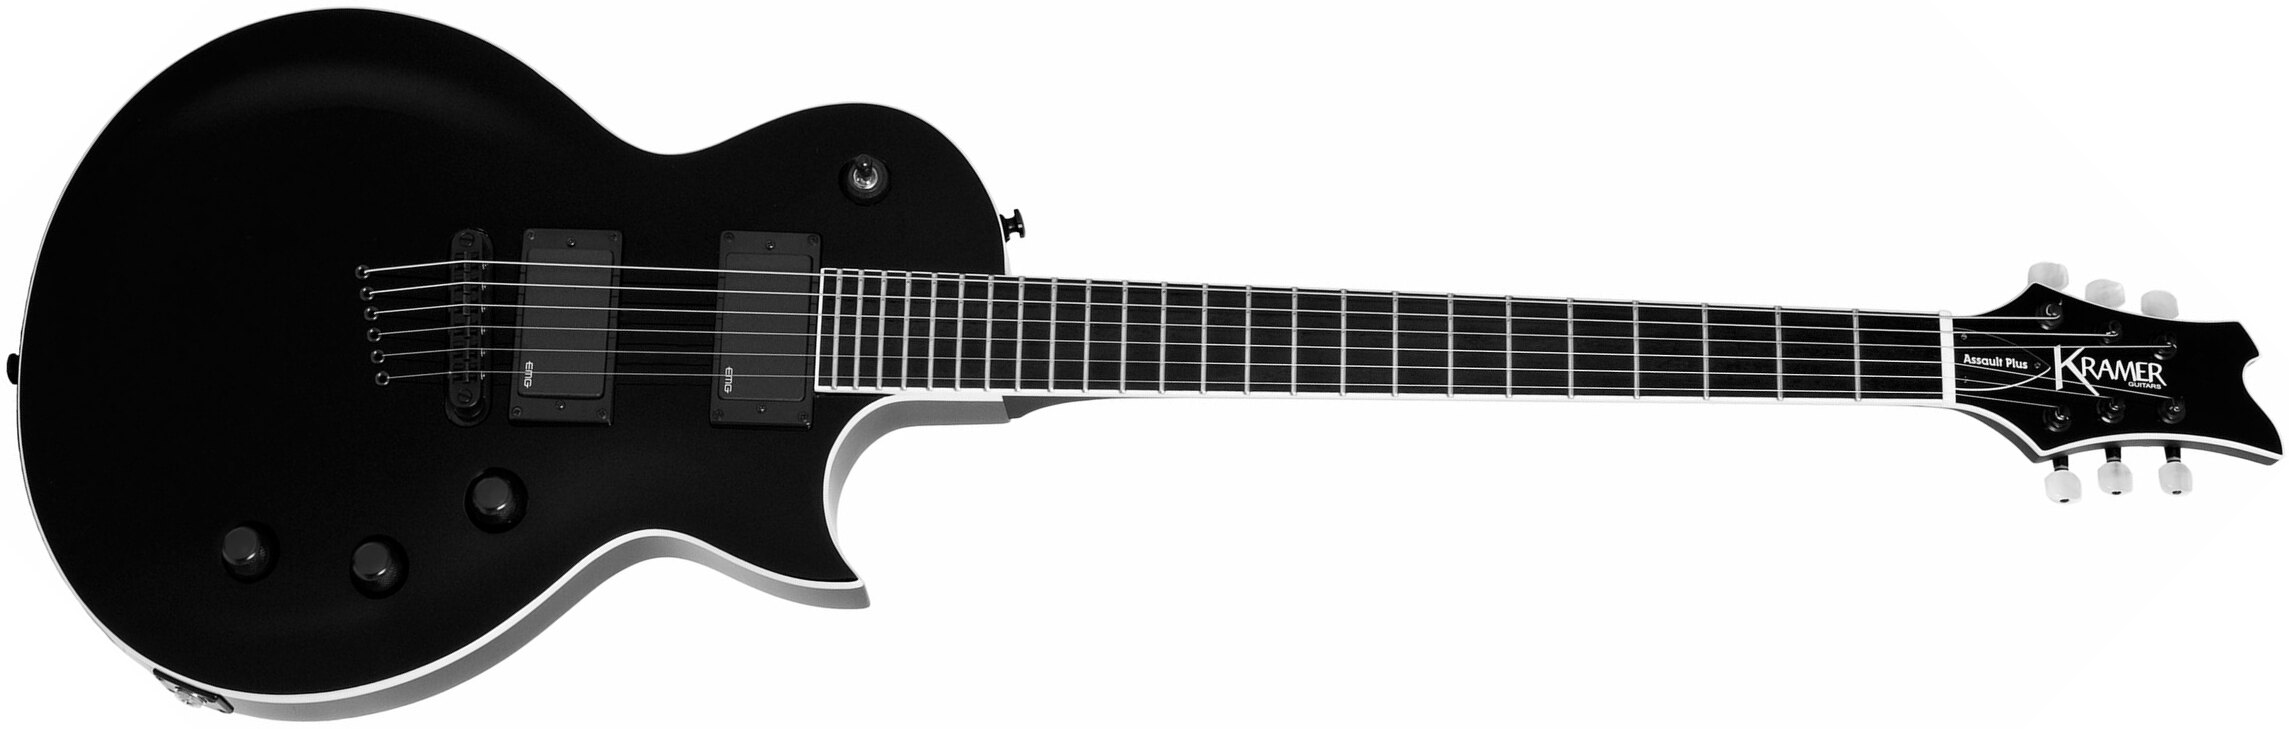 Kramer Assault Plus 2h Emg Ht Eb - Black - Guitarra eléctrica de corte único. - Main picture